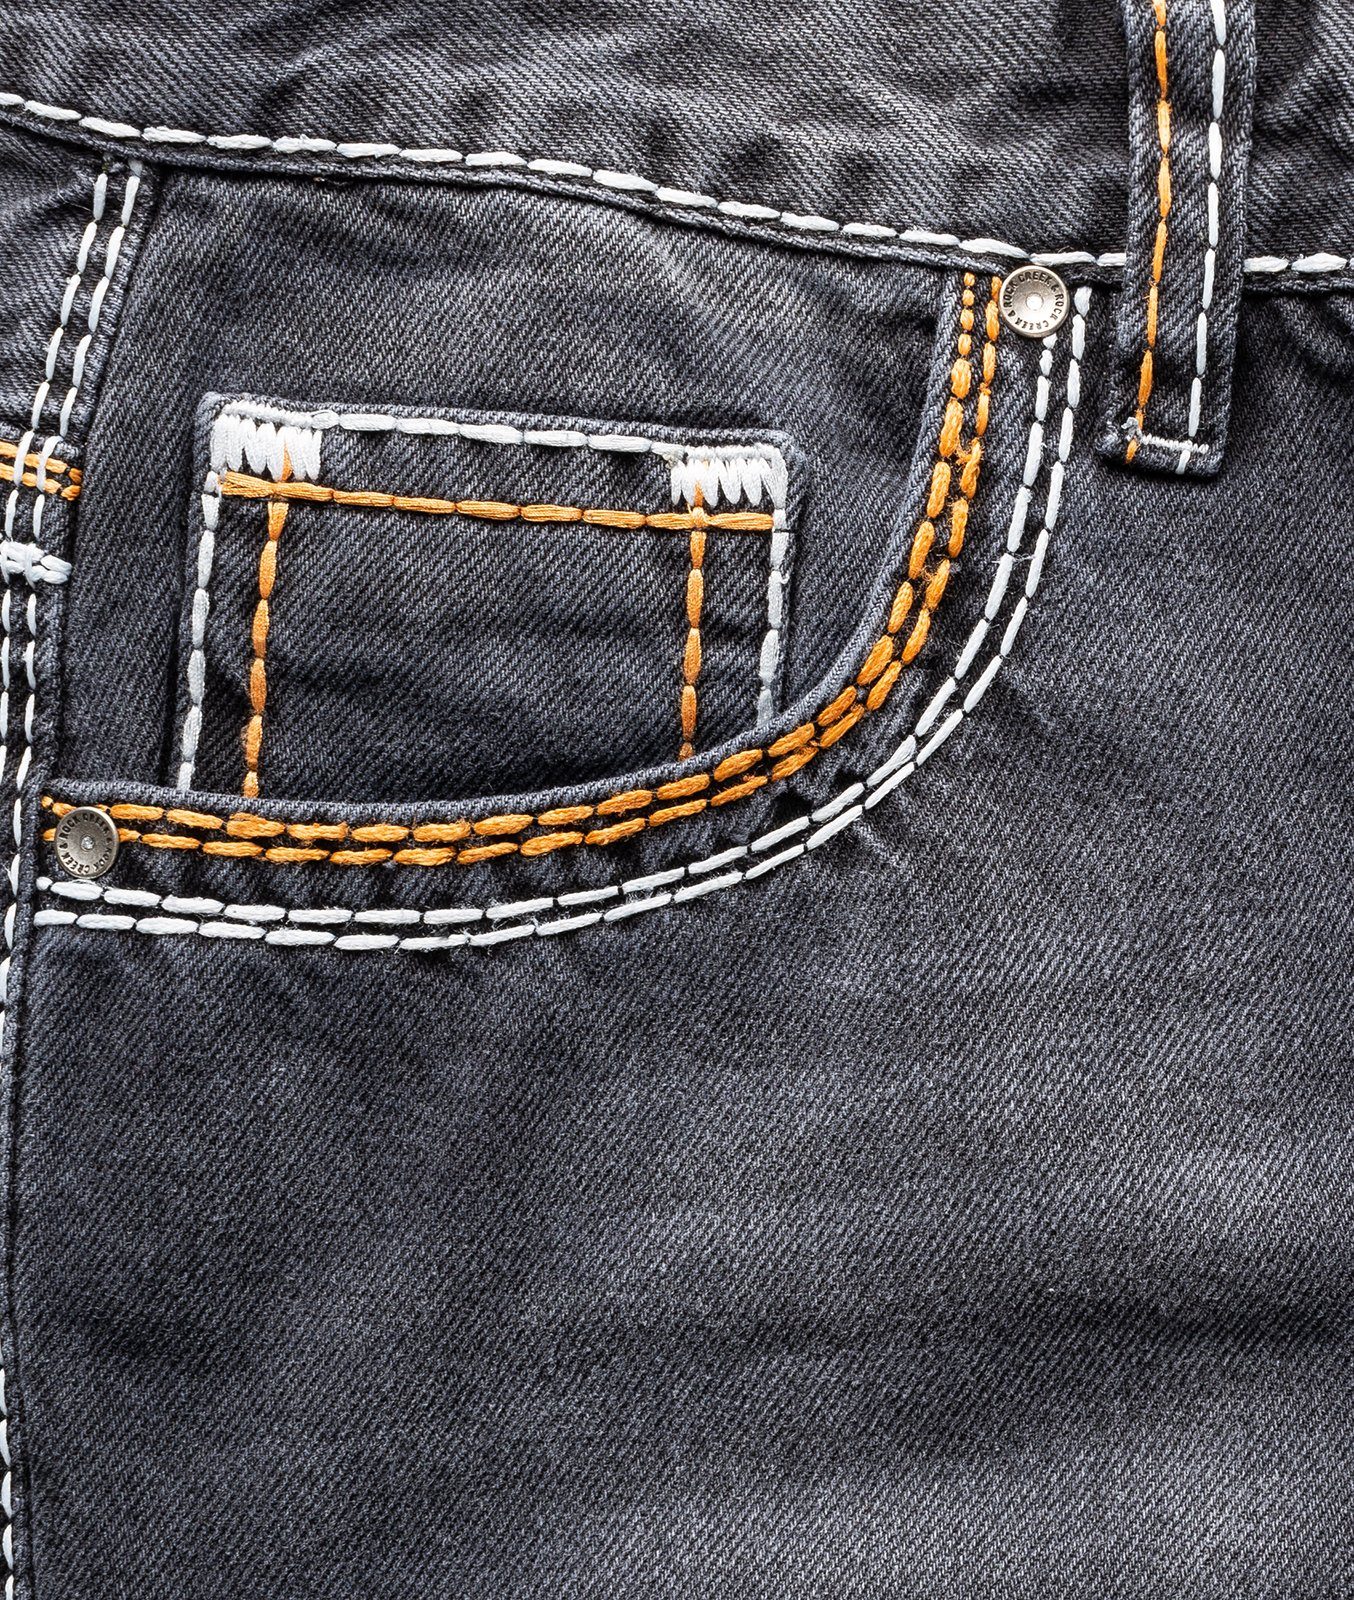 Herren Jeans Rock Creek Straight-Jeans Herren Jeans Comfort Fit dicke Nähte RC-2168